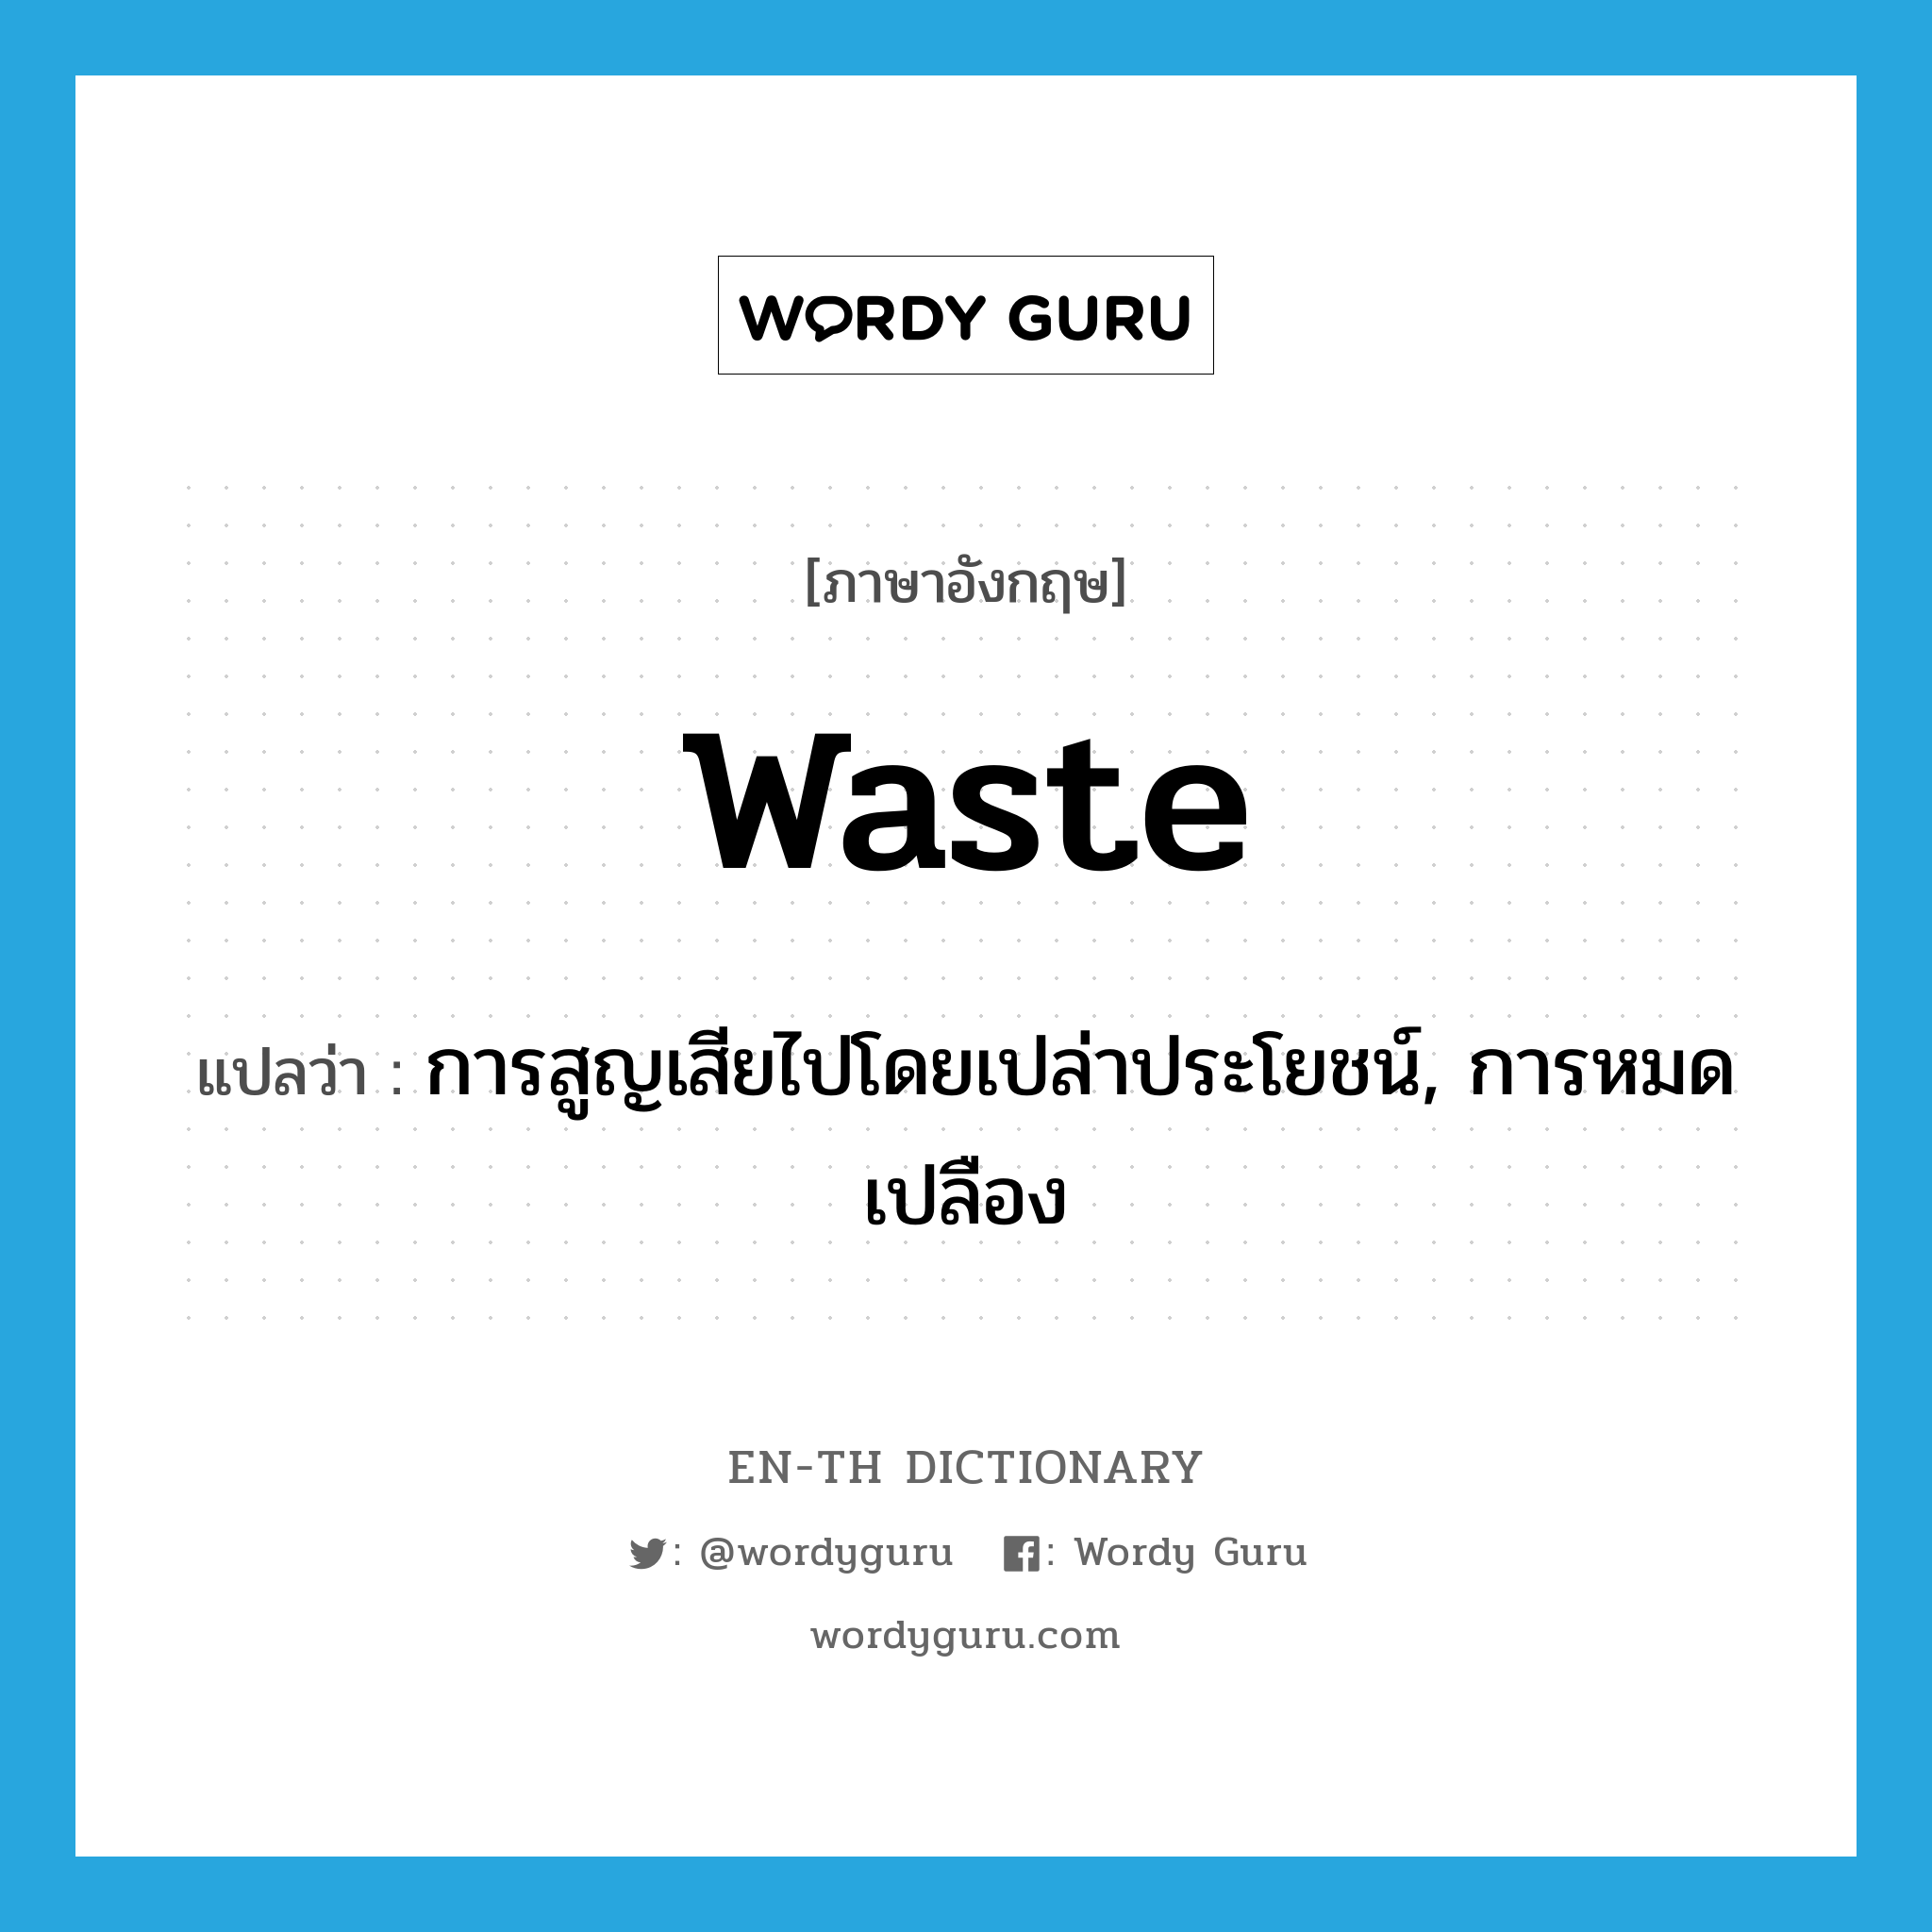 การสูญเสียไปโดยเปล่าประโยชน์, การหมดเปลือง ภาษาอังกฤษ?, คำศัพท์ภาษาอังกฤษ การสูญเสียไปโดยเปล่าประโยชน์, การหมดเปลือง แปลว่า waste ประเภท N หมวด N